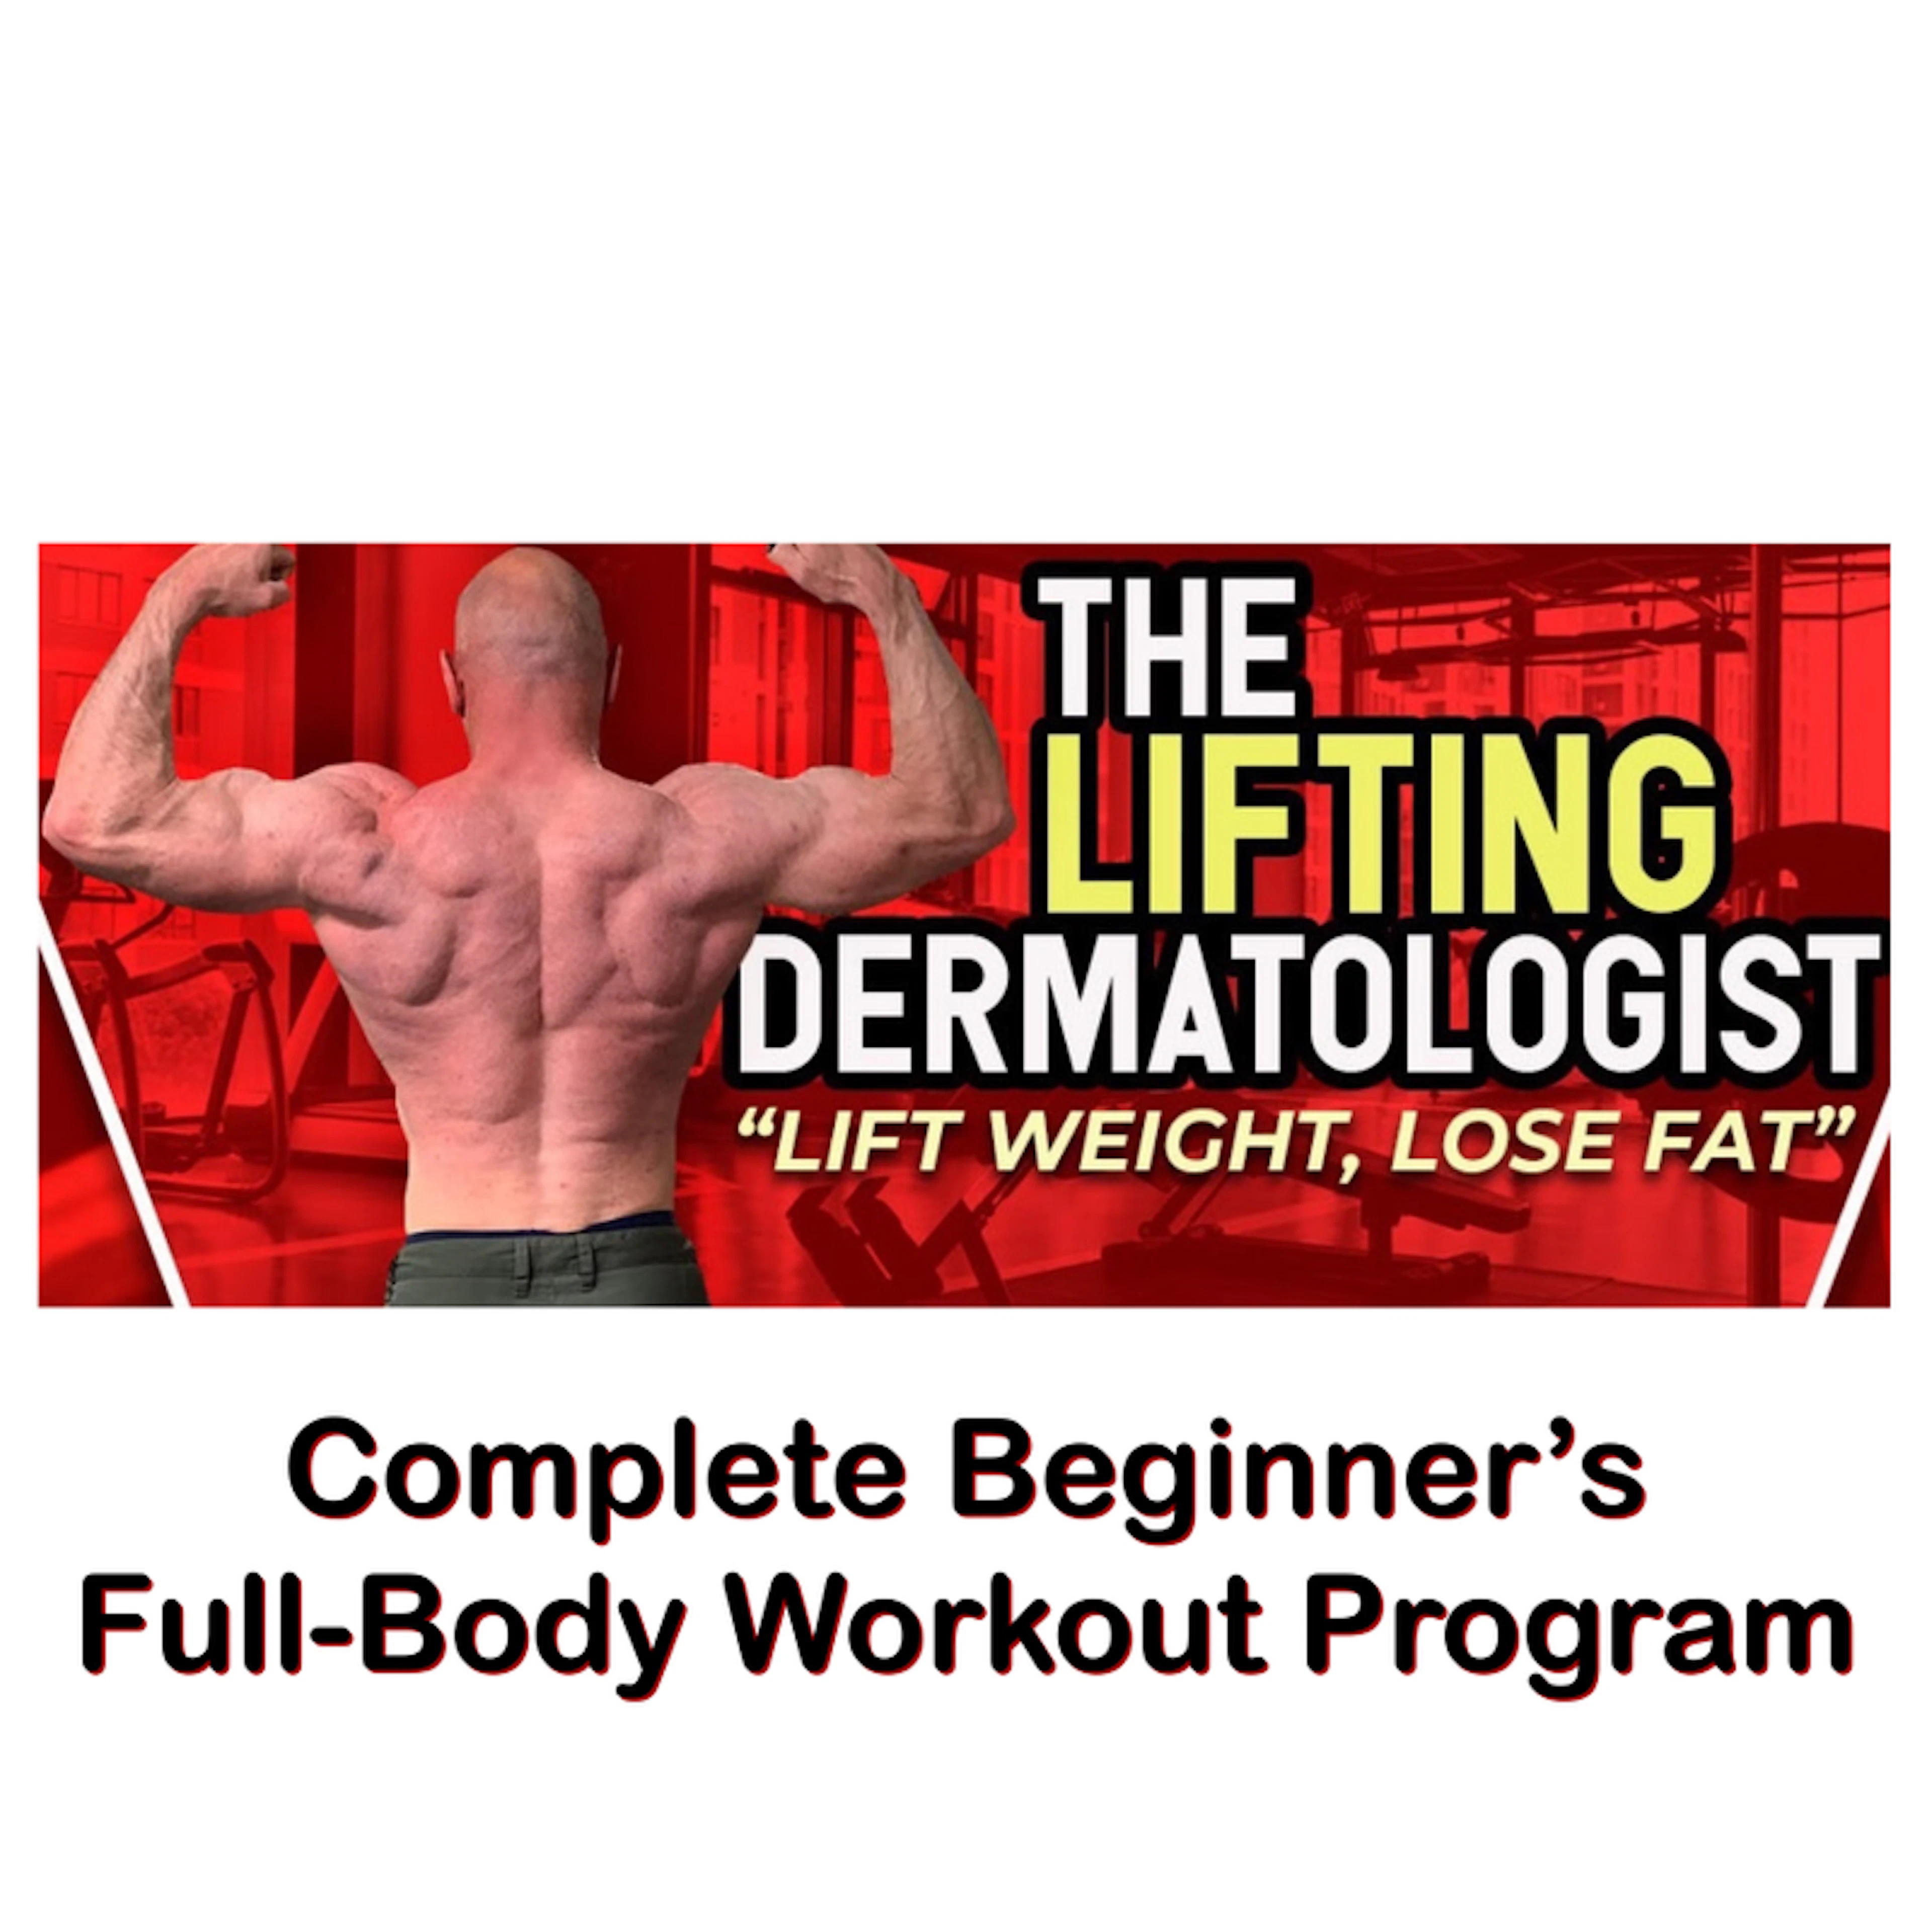 Complete Beginner’s Full-Body Program